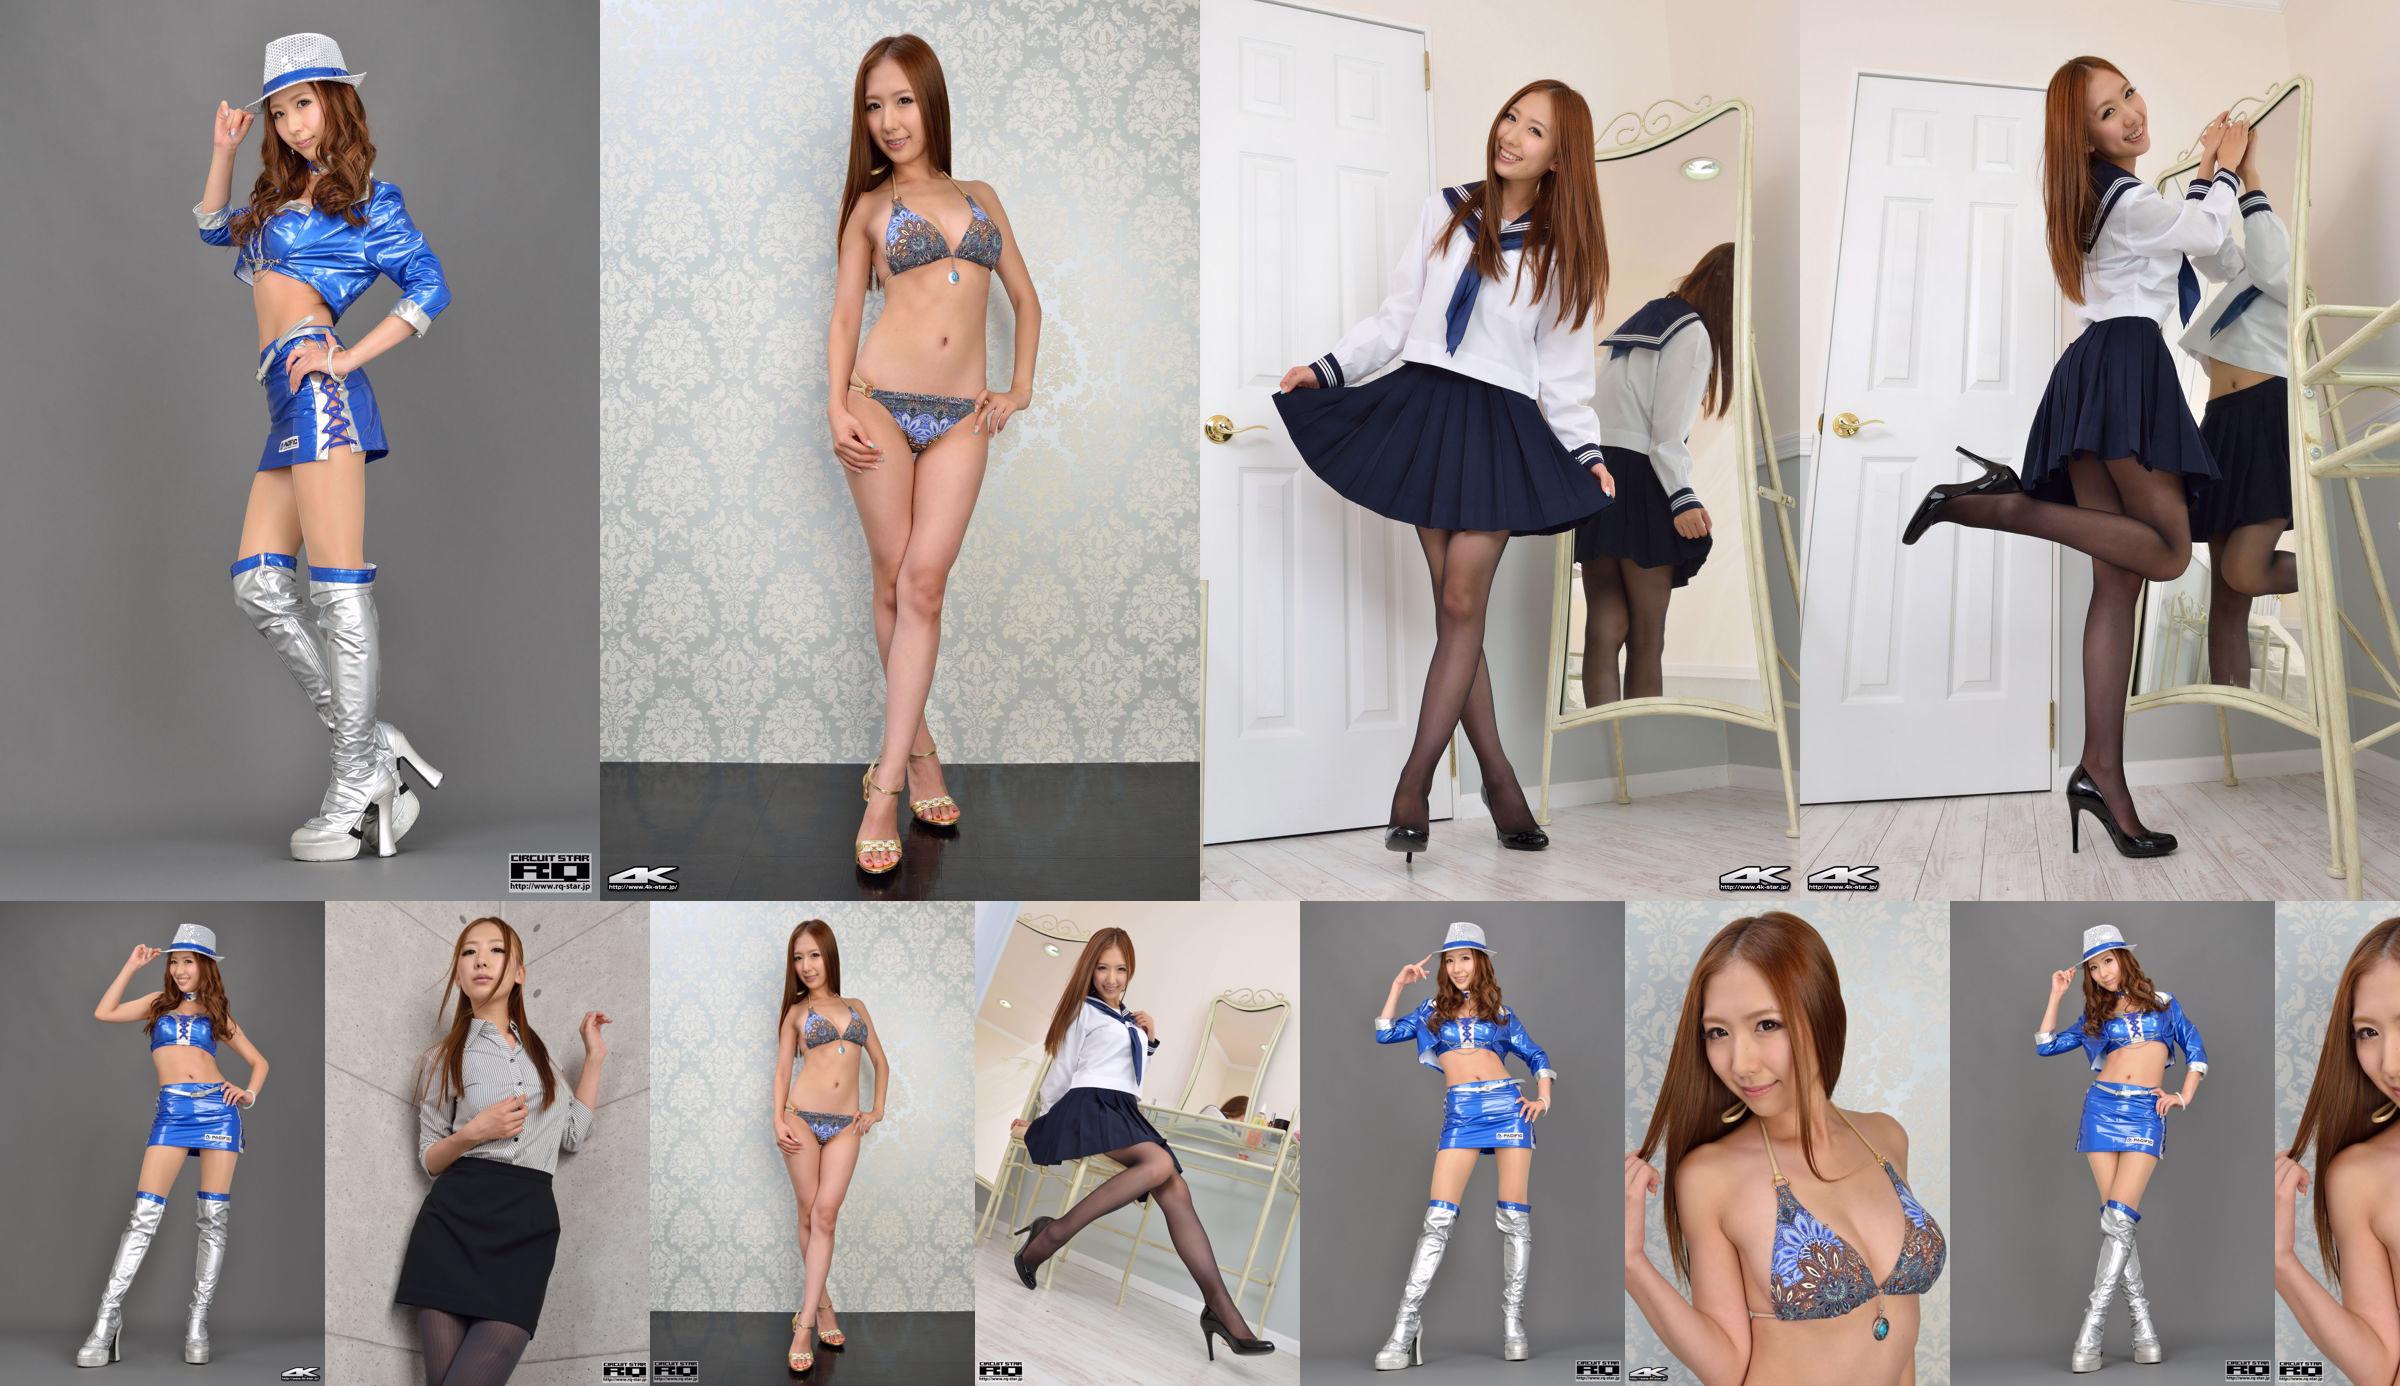 [RQ-STAR] NO.00995 Yui Iwasaki School Girl Uniforme de marinero de seda negro No.8b929c Página 7